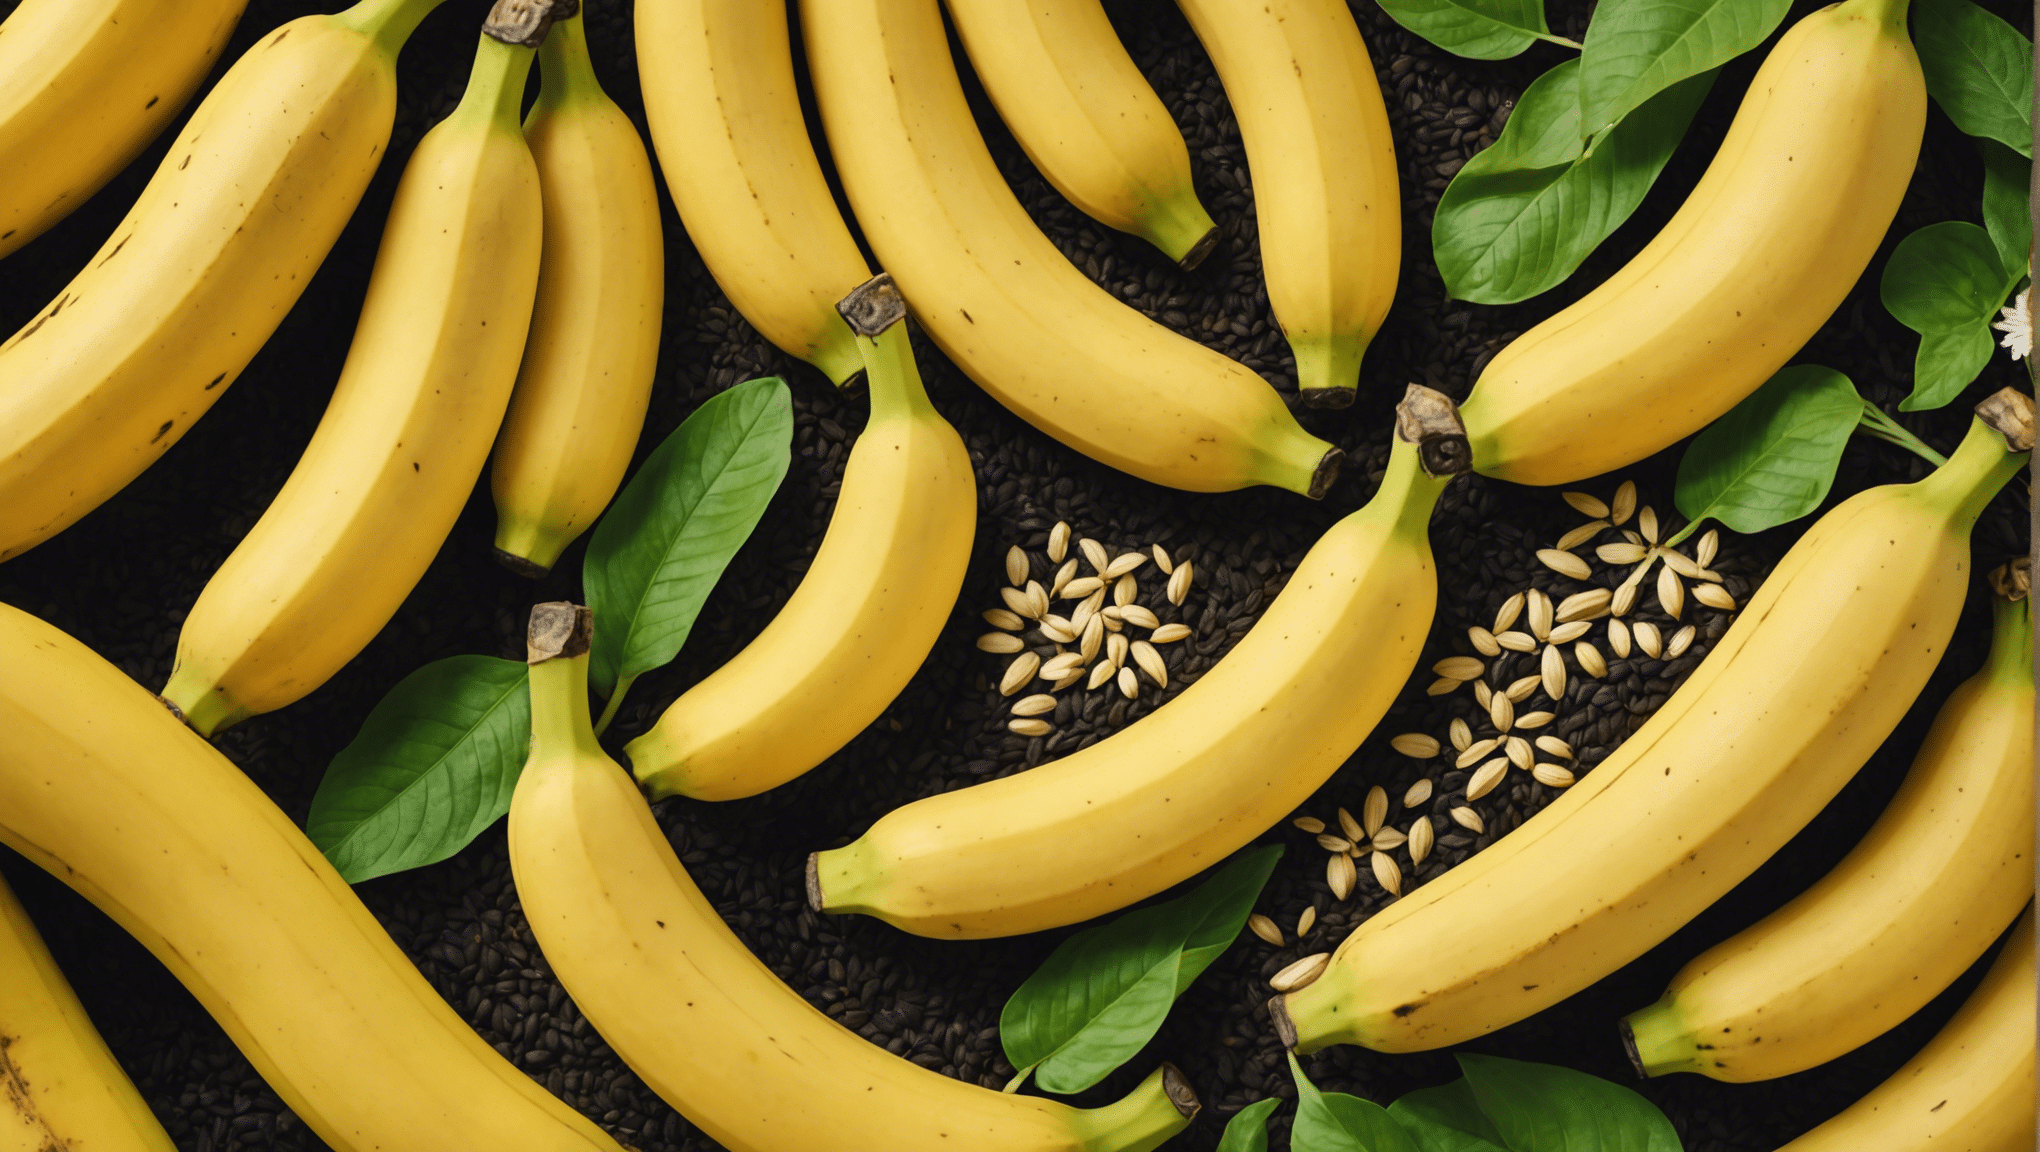 Descubra si es seguro comer plátanos con semillas con nuestra guía completa. Infórmese sobre los posibles riesgos y beneficios de consumir plátanos con semillas.